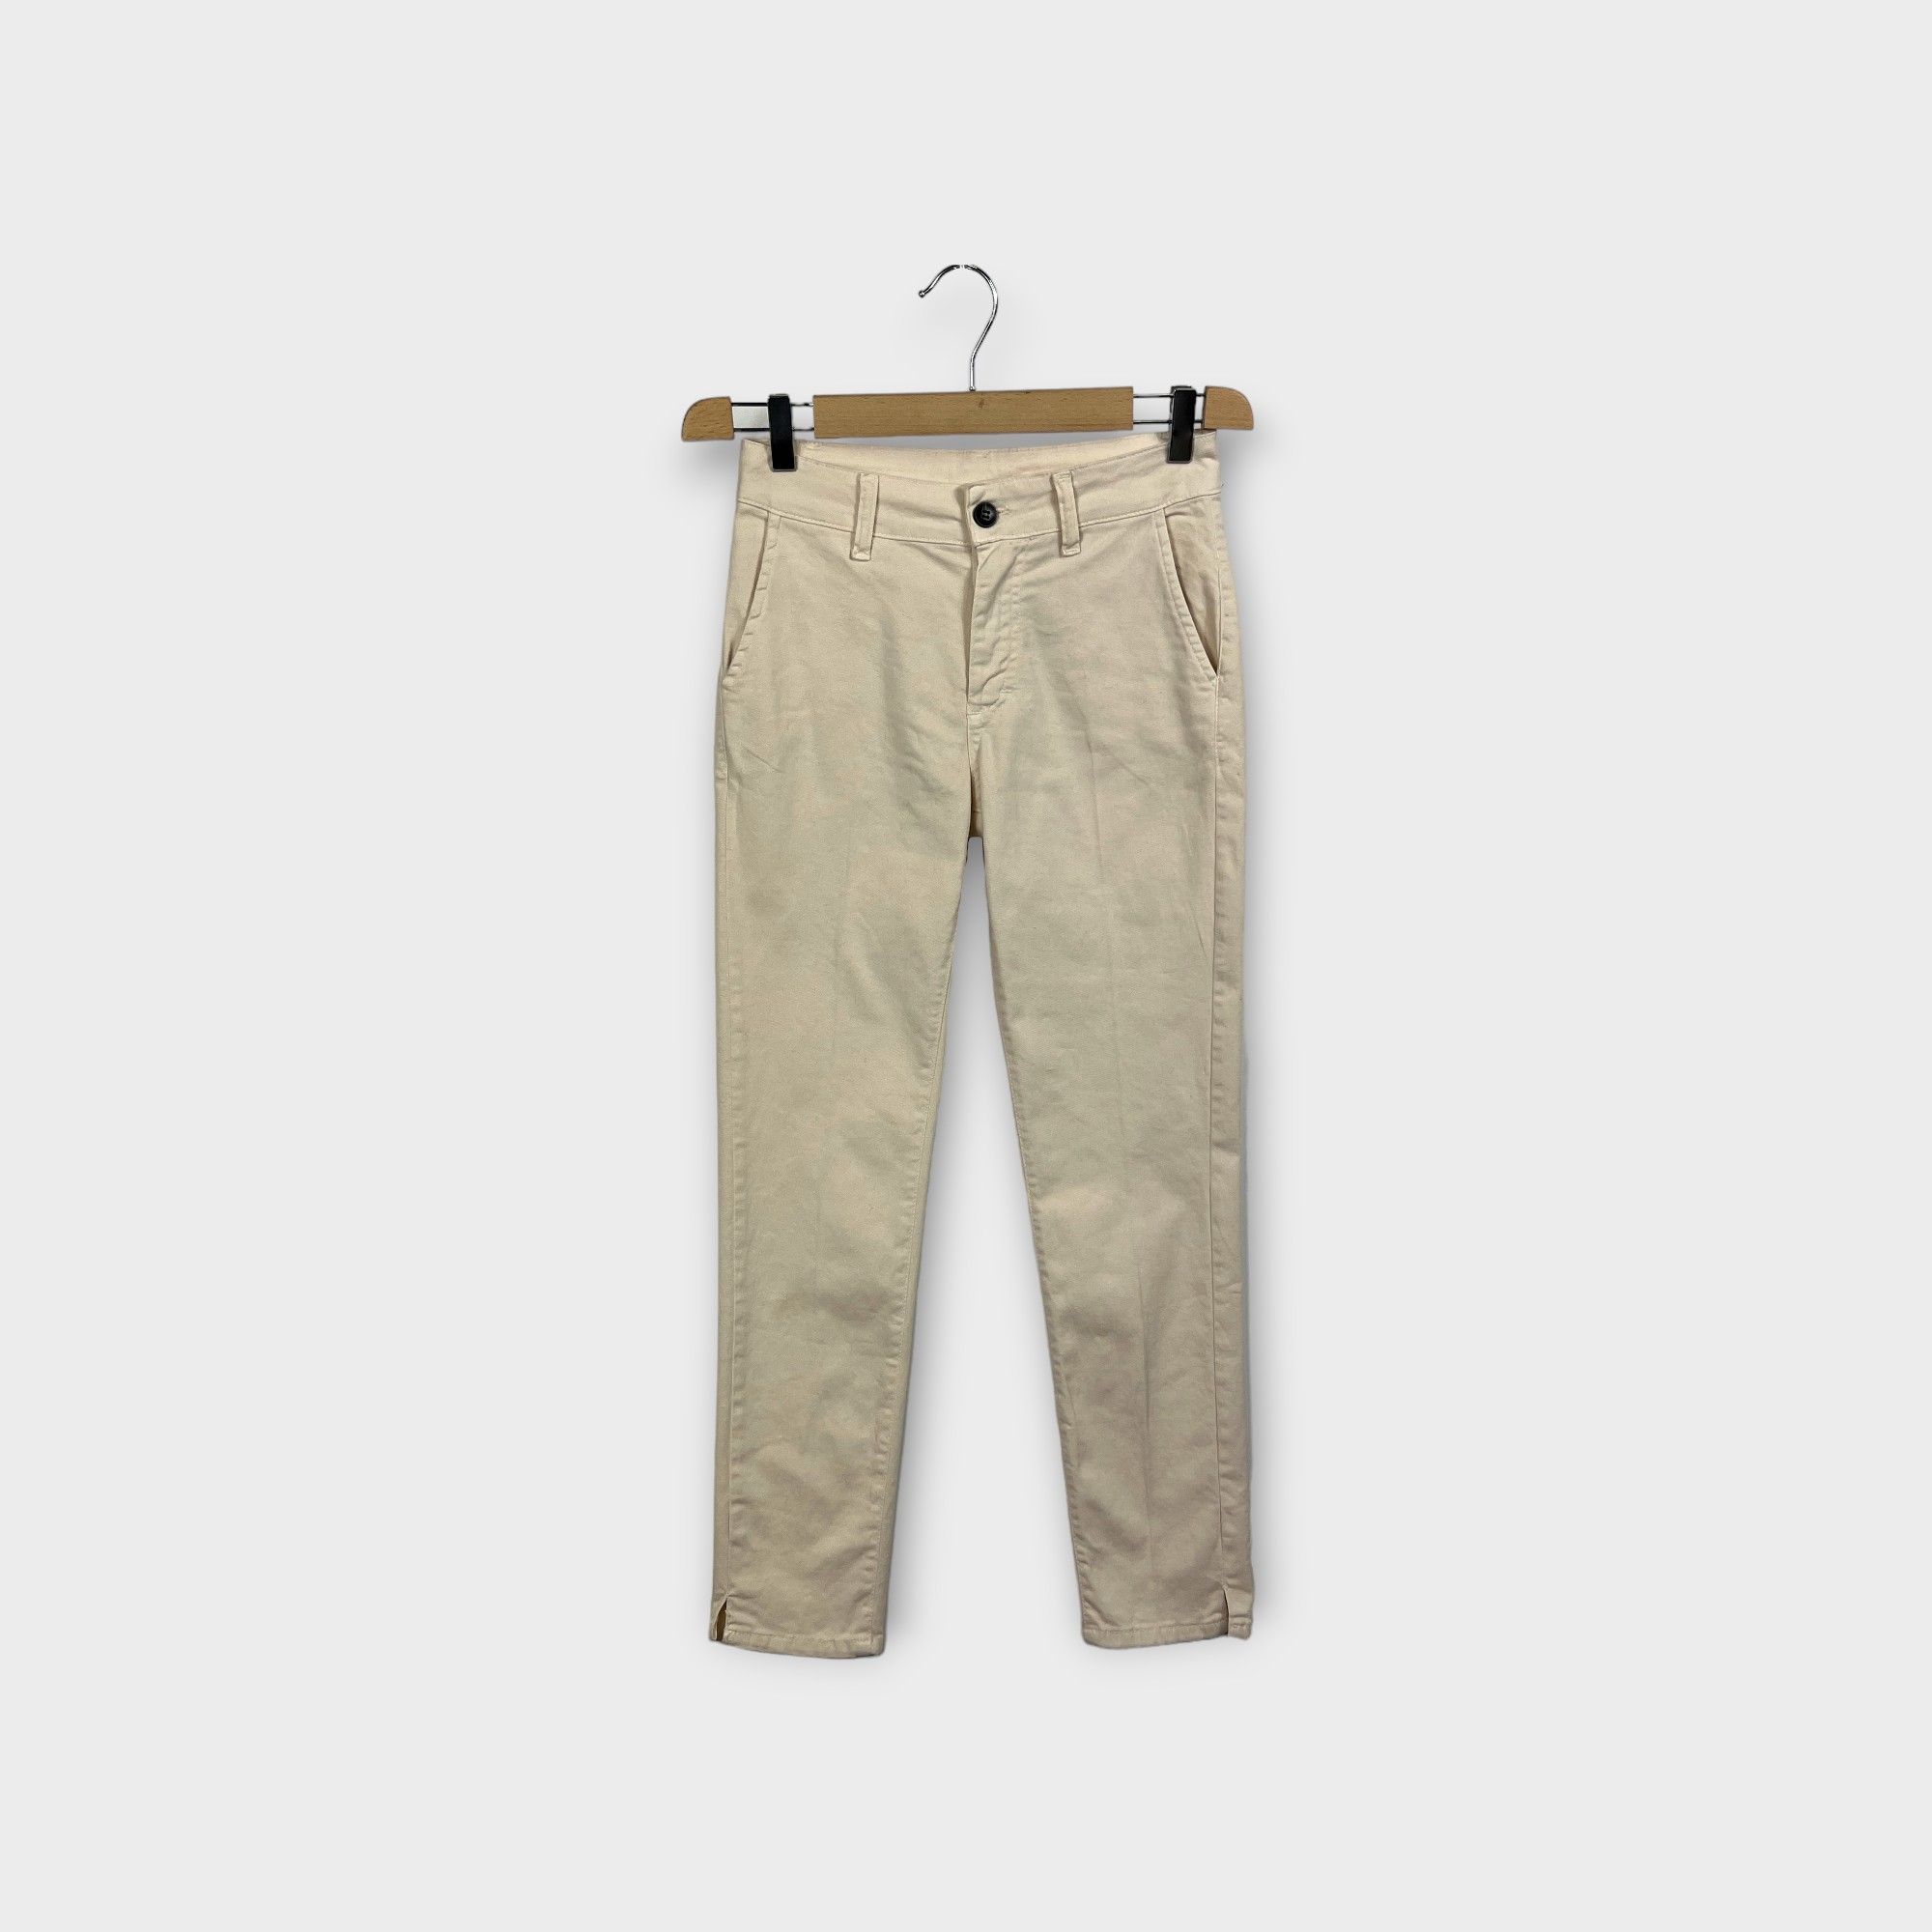 HELLEH - Pantaloni "New York" in cotone smerigliato